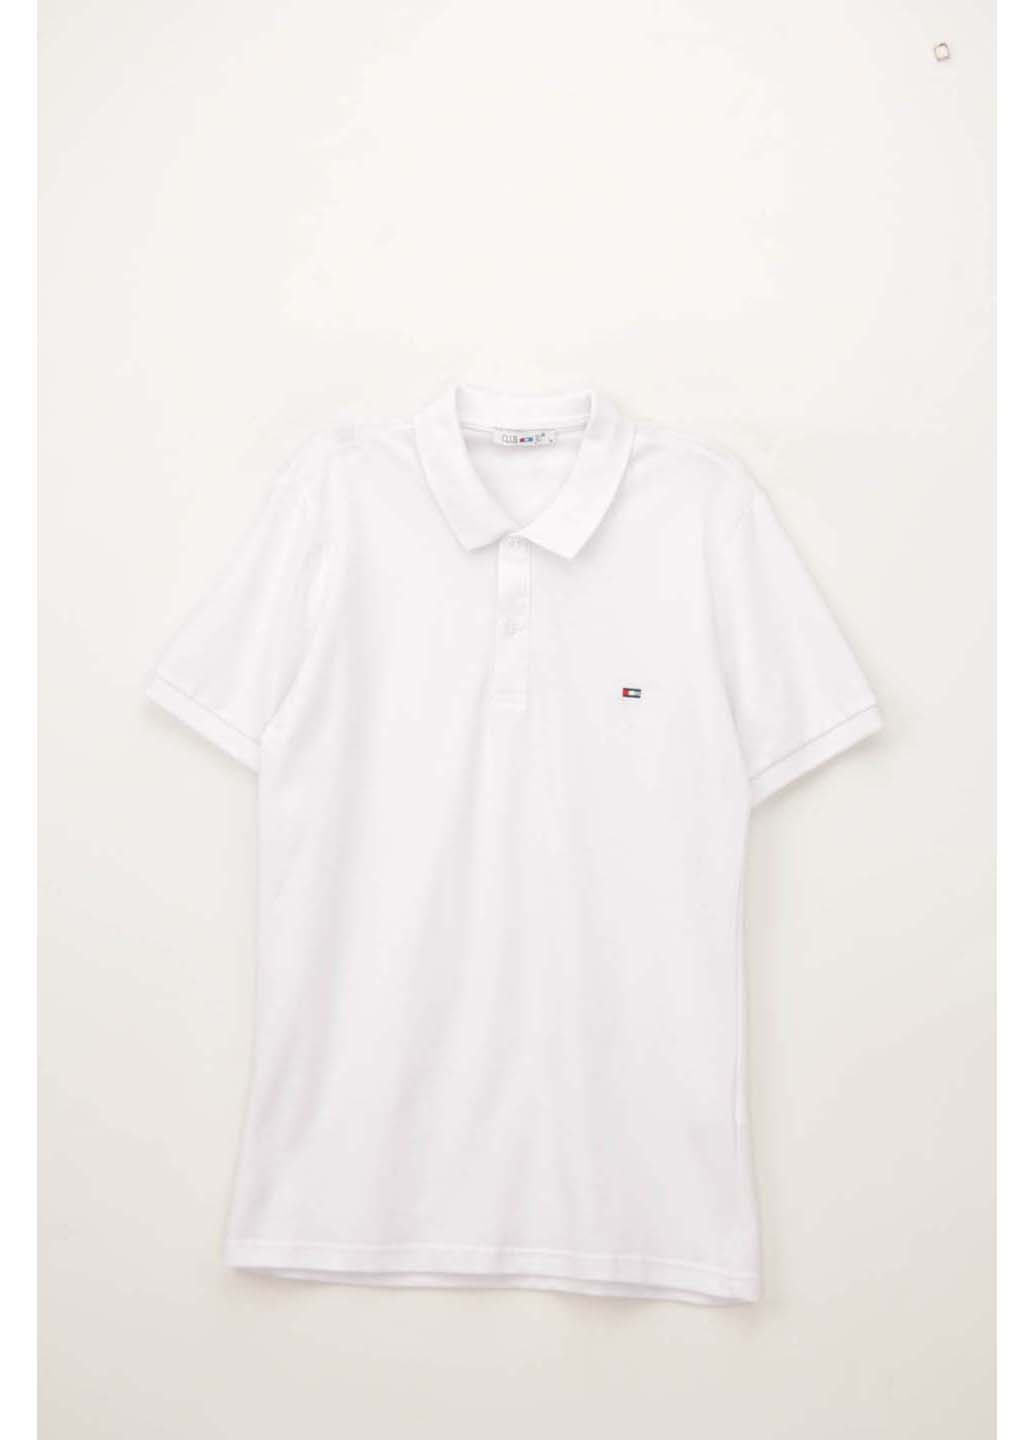 Белая футболка-поло для мужчин CLUB JU